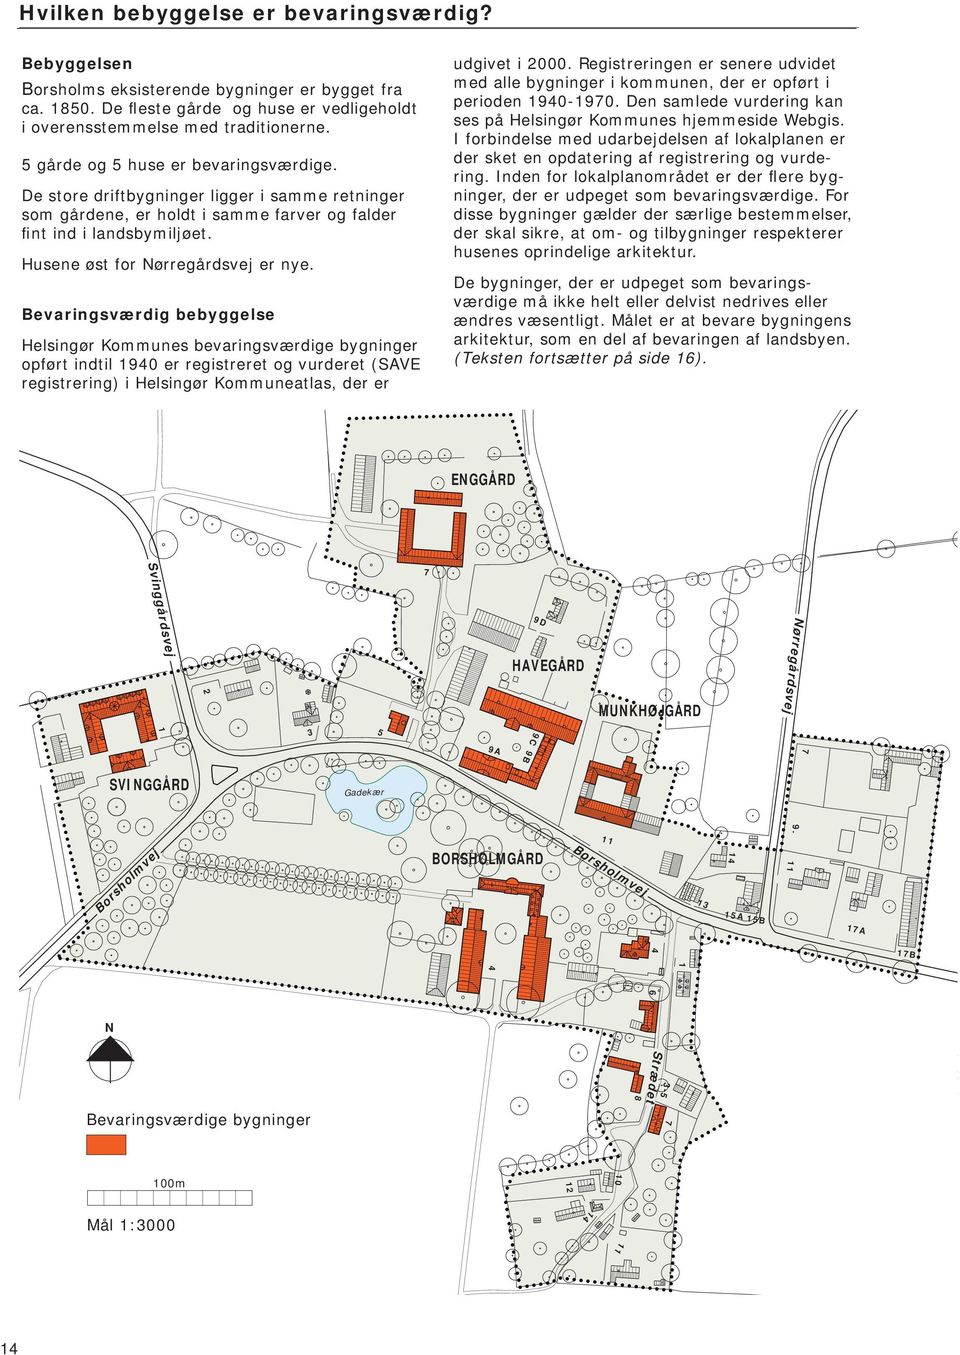 Bevaringsværdig bebyggelse Helsingør Kommunes bevaringsværdige bygninger opført indtil 1940 er registreret og vurderet (SAVE registrering) i Helsingør Kommuneatlas, der er udgivet i 2000.